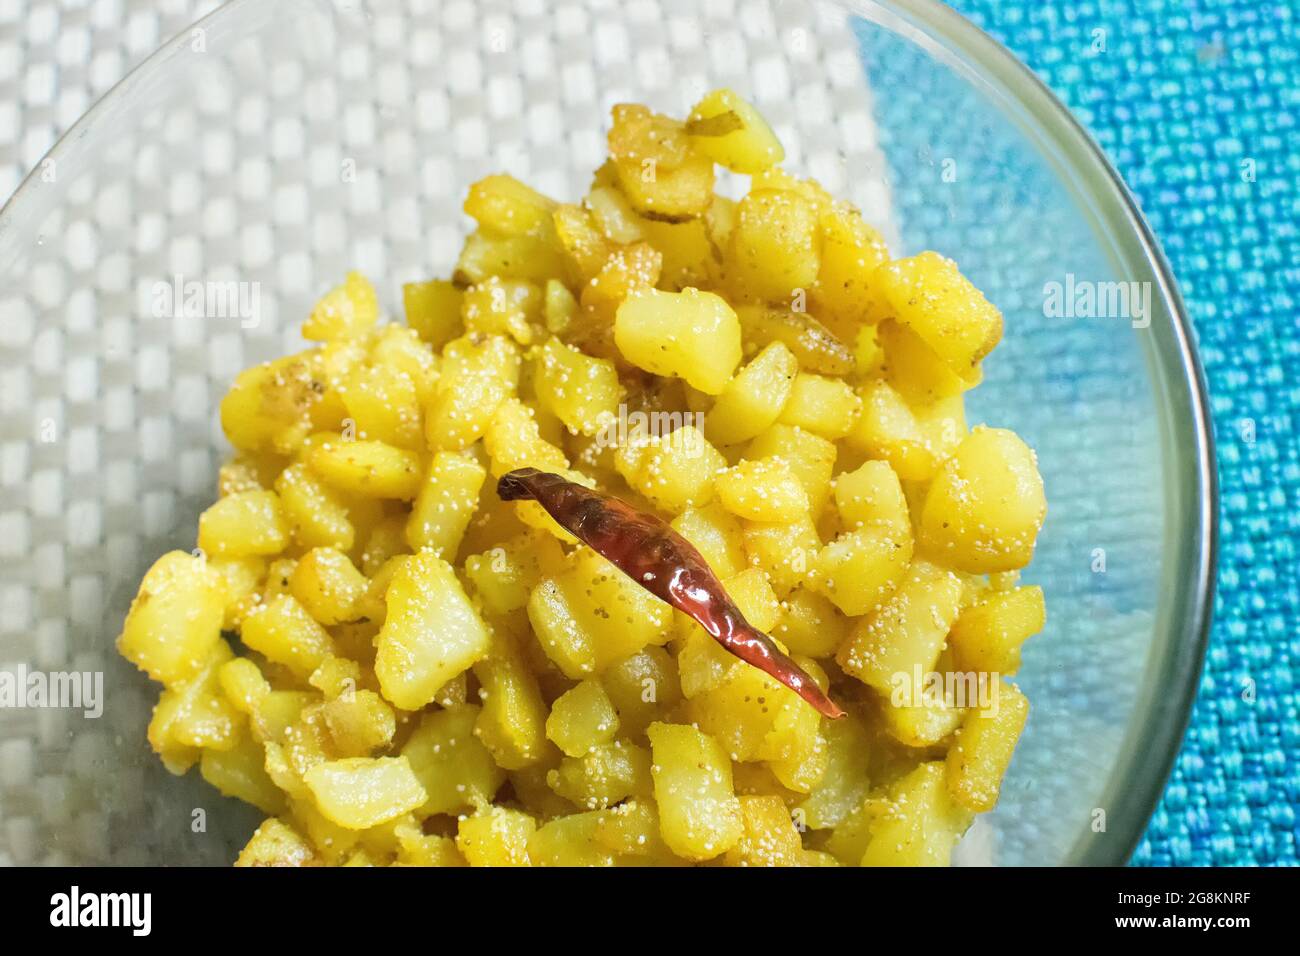 In Scheiben geschnittene und gebratene Kartoffelschüssel - ein Favorit unter den Indern. Kartoffeln werden in feine Scheiben geschnitten, mit Öl und Chili gebraten, dann in einem Gericht heiß serviert. Stockfoto